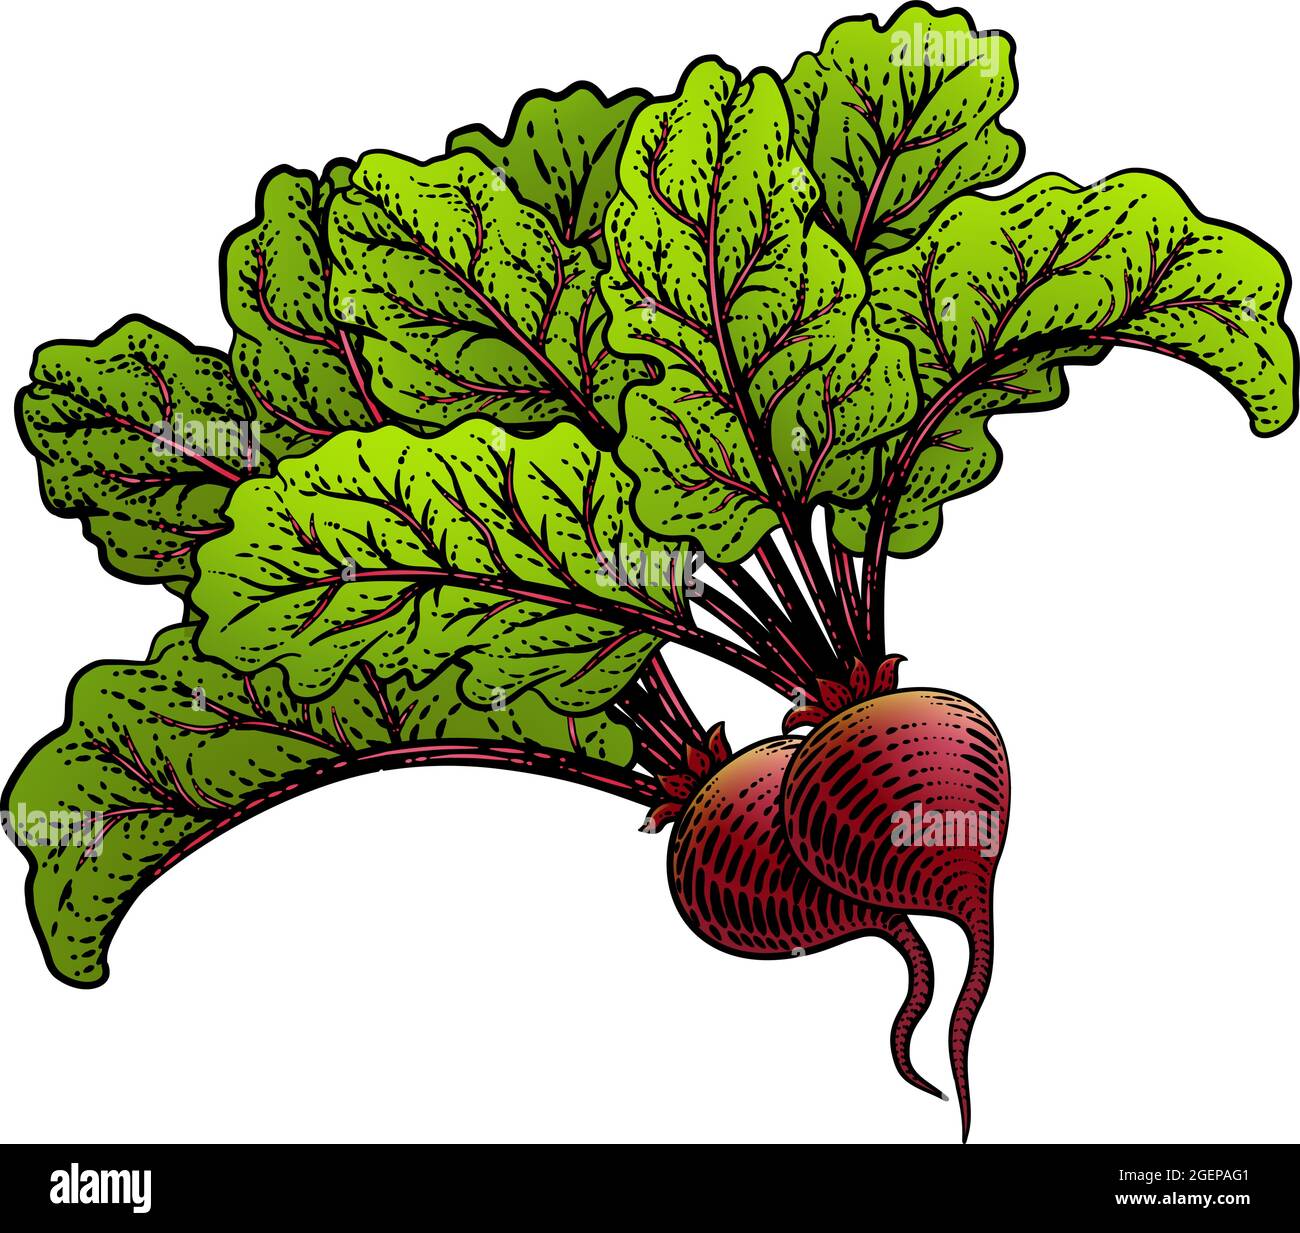 Betteraves Beetroot Illustration de la coupe de bois de légumes Illustration de Vecteur